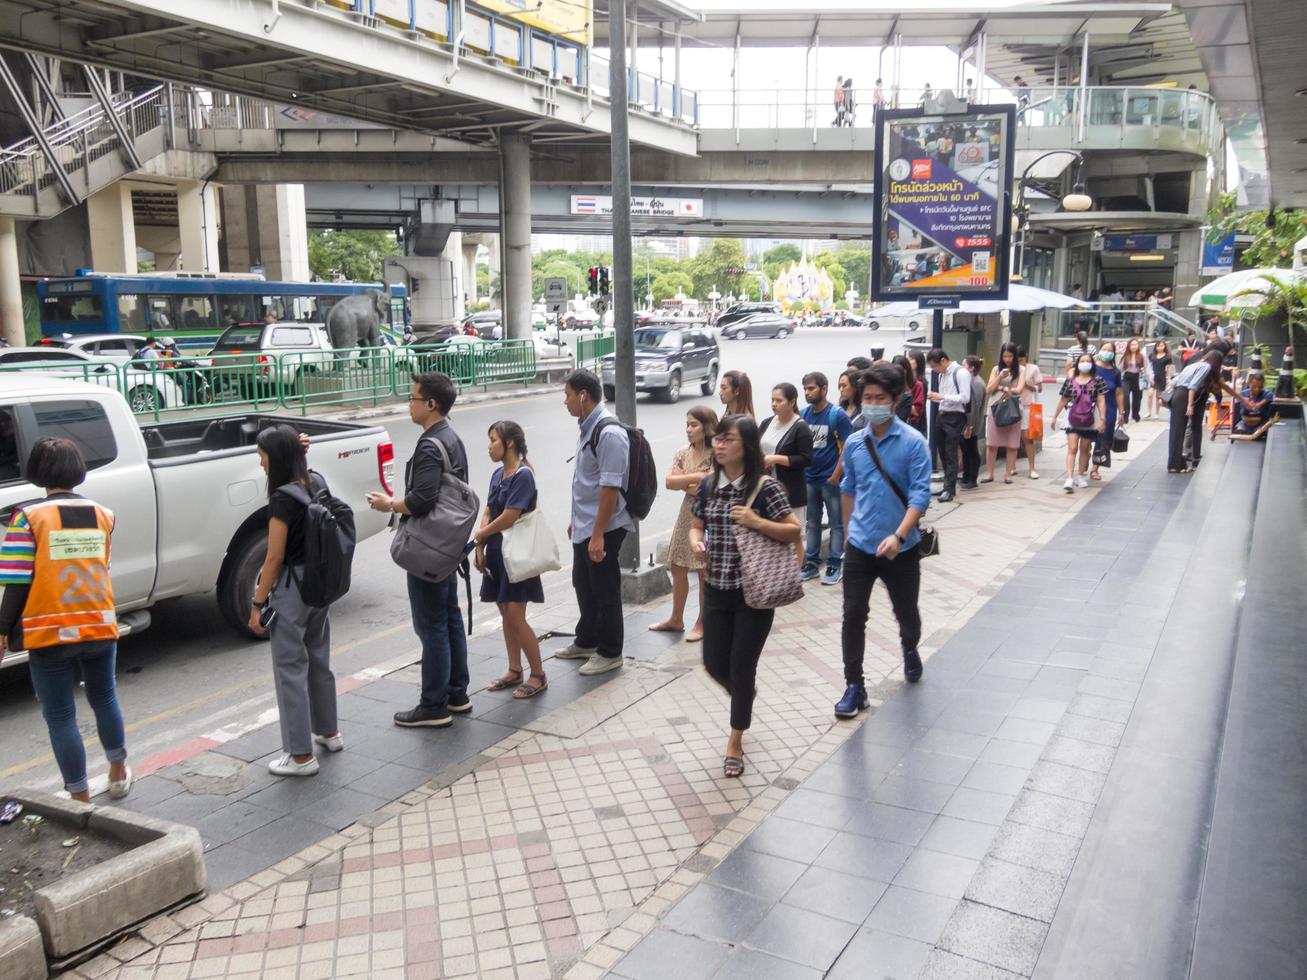 silom bangkokthailand16 agosto 2018 al mattino le persone vanno al lavoro a piedi e svolgono attività come acquistare caffè per acquistare o acquistare biglietti della lotteria e fare la fila per una moto. foto